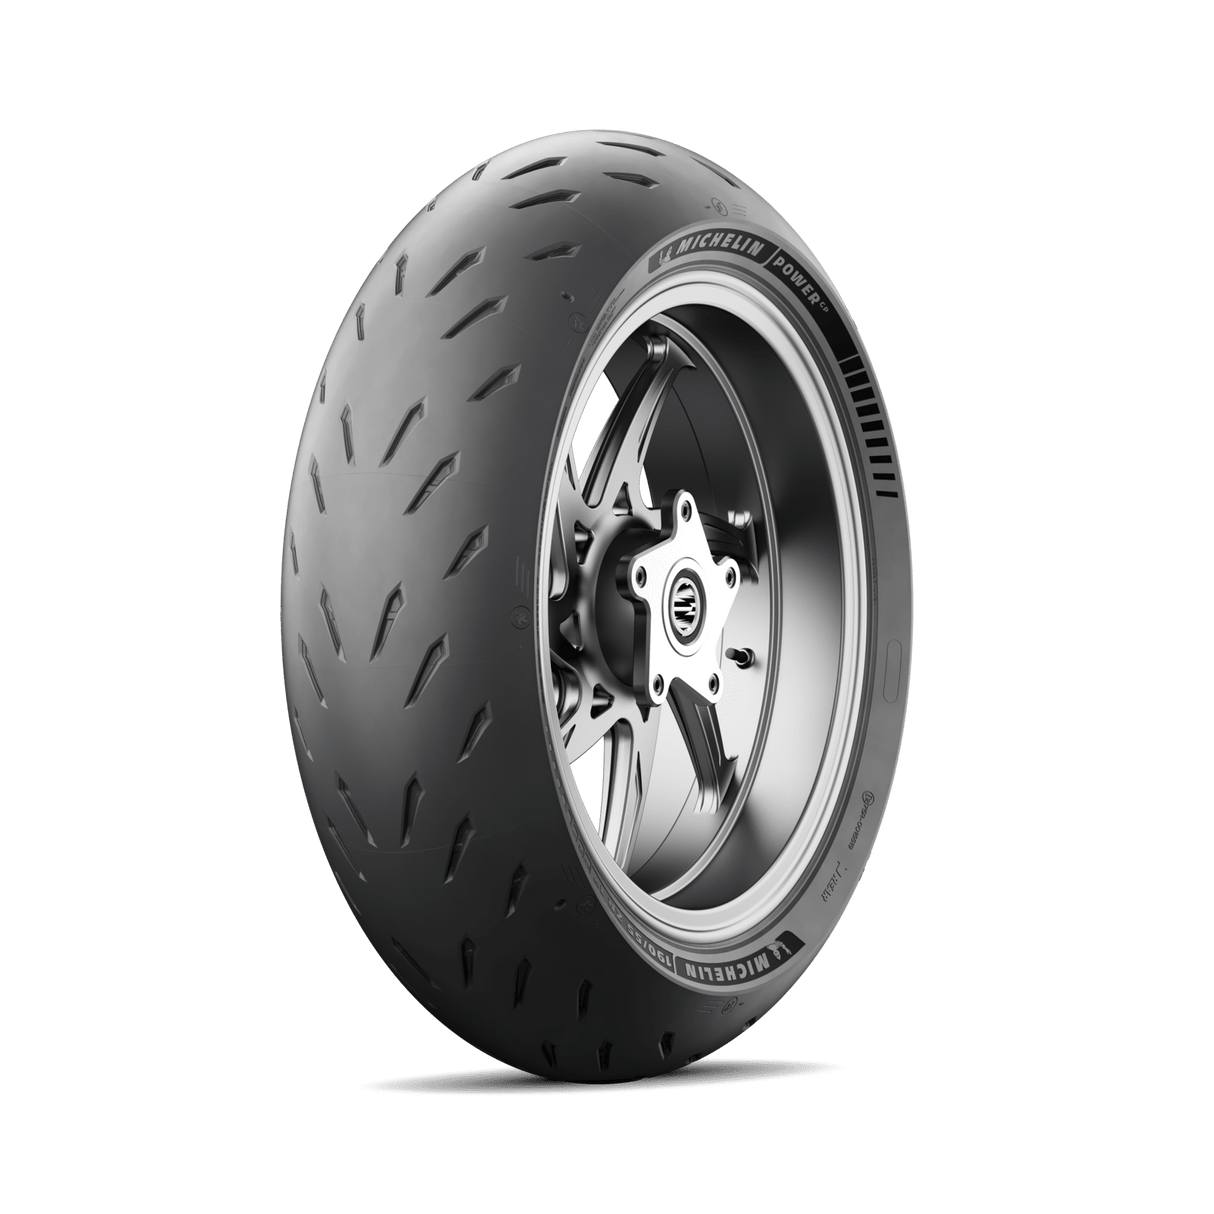 Michelin Power GP 190/50 ZR 17 (73W) Rear Tyre